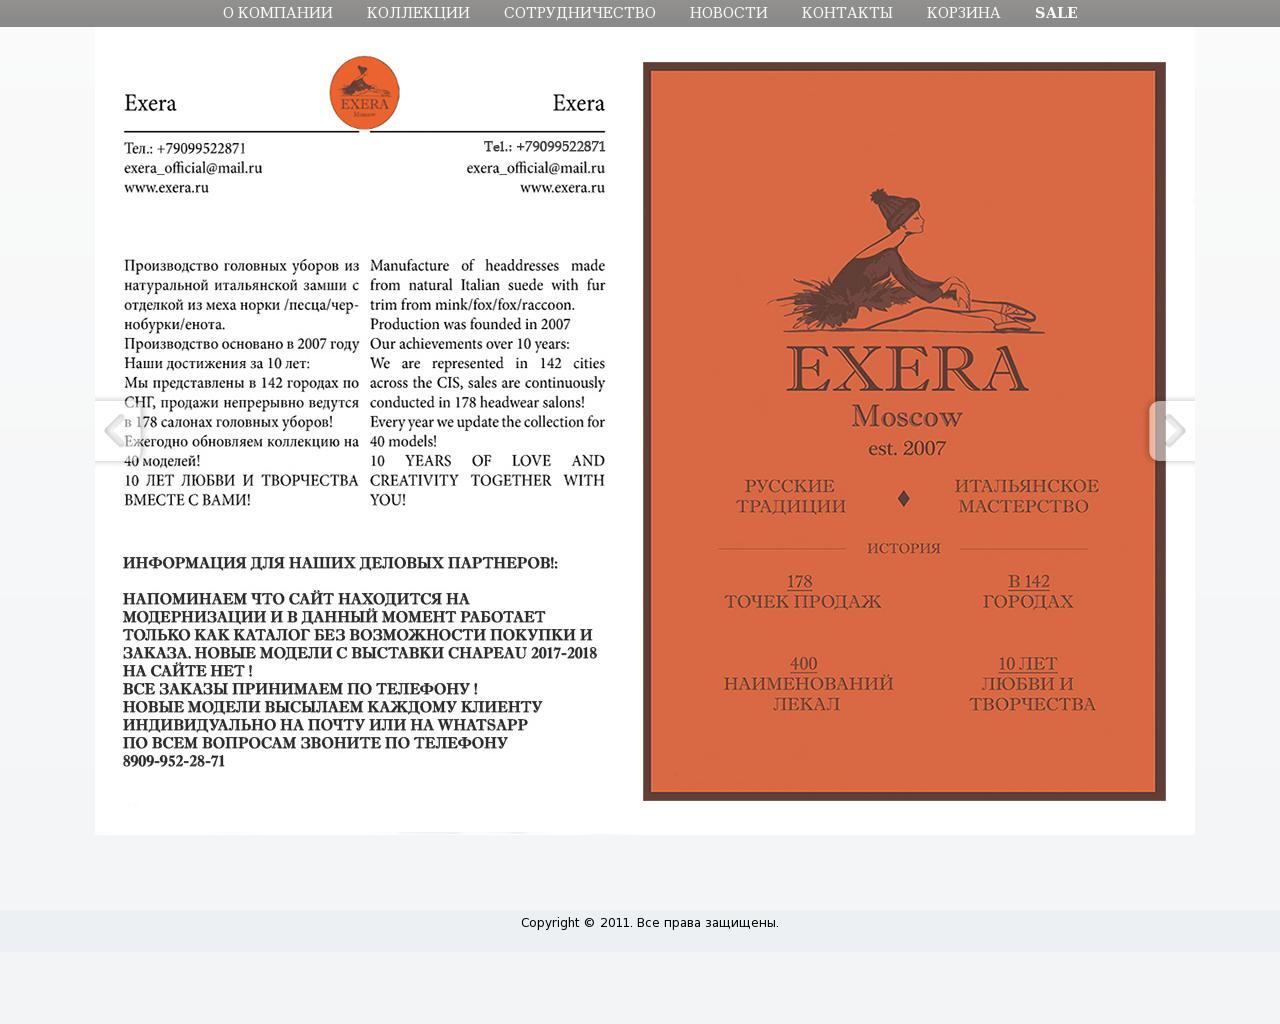 Изображение сайта exera.ru в разрешении 1280x1024